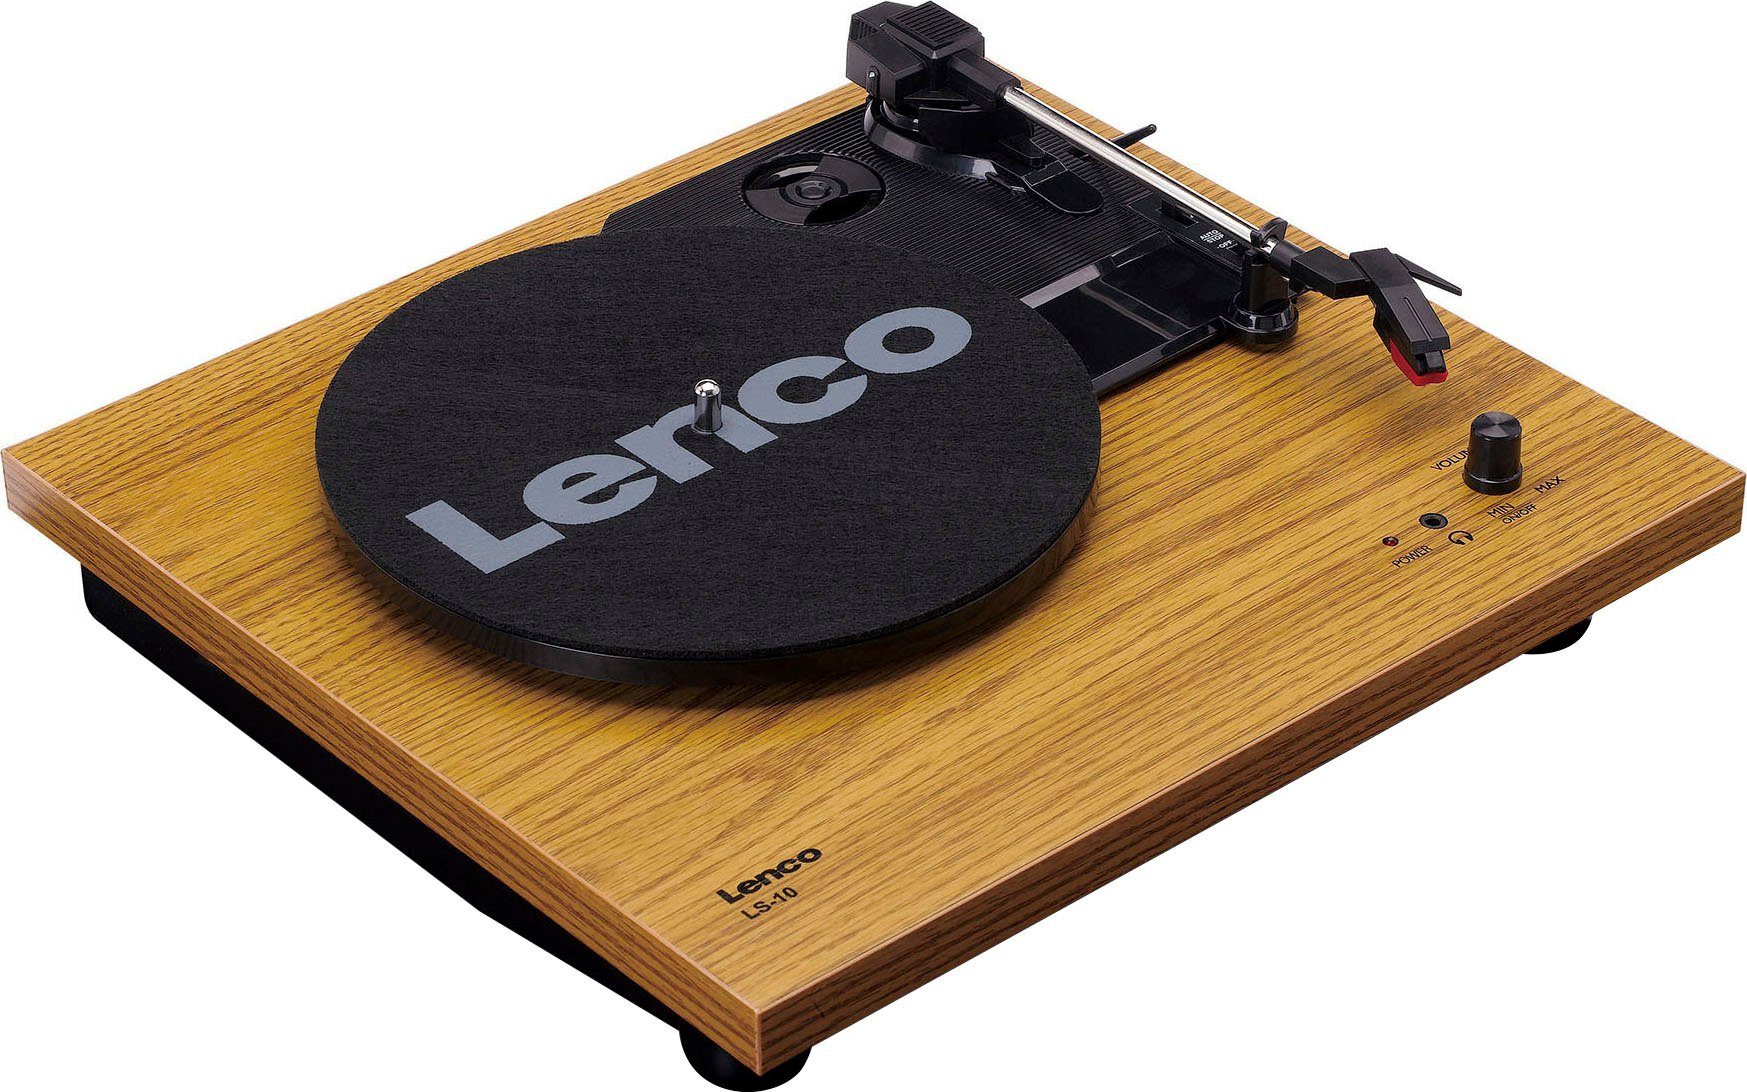 (Riemenantrieb) Lautsprechern Plattenspieler mit Lenco (Weiß/Holz) LS-10WD Plattenspieler